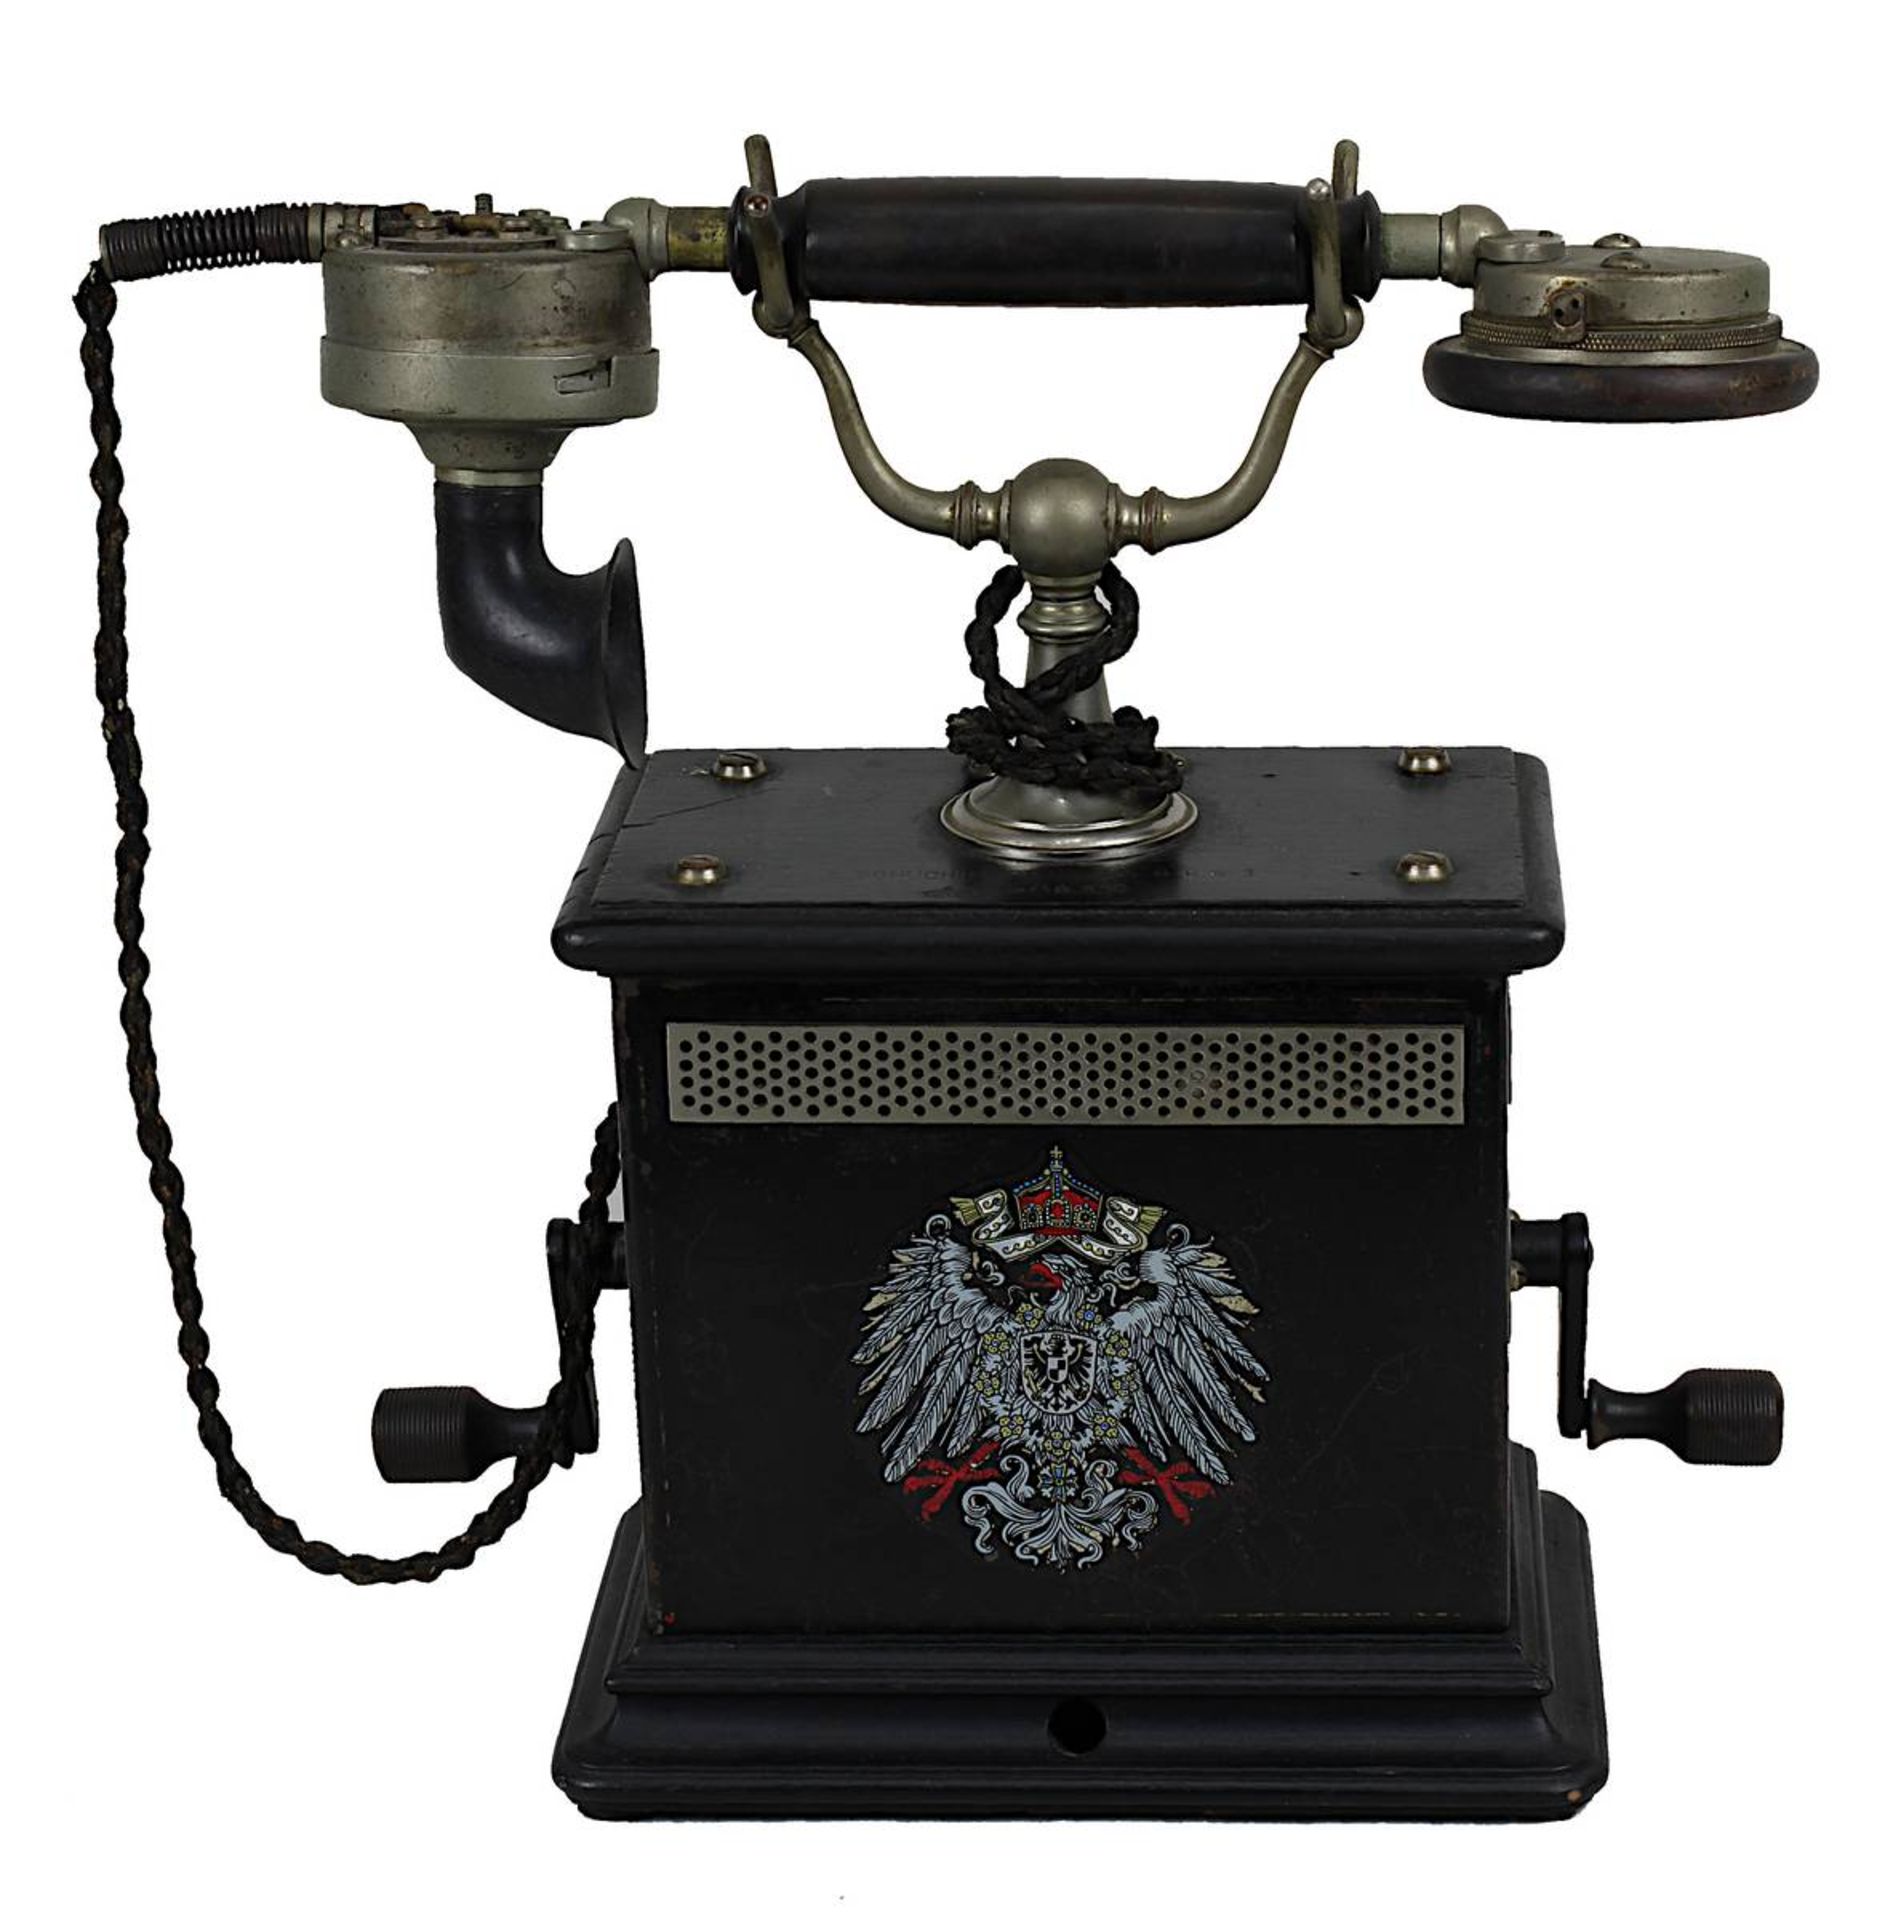 Telefon - Tischapparat, F. Schuchhardt Berlin Anfang 20.Jh., unter Verwendung von Holz, Metall und